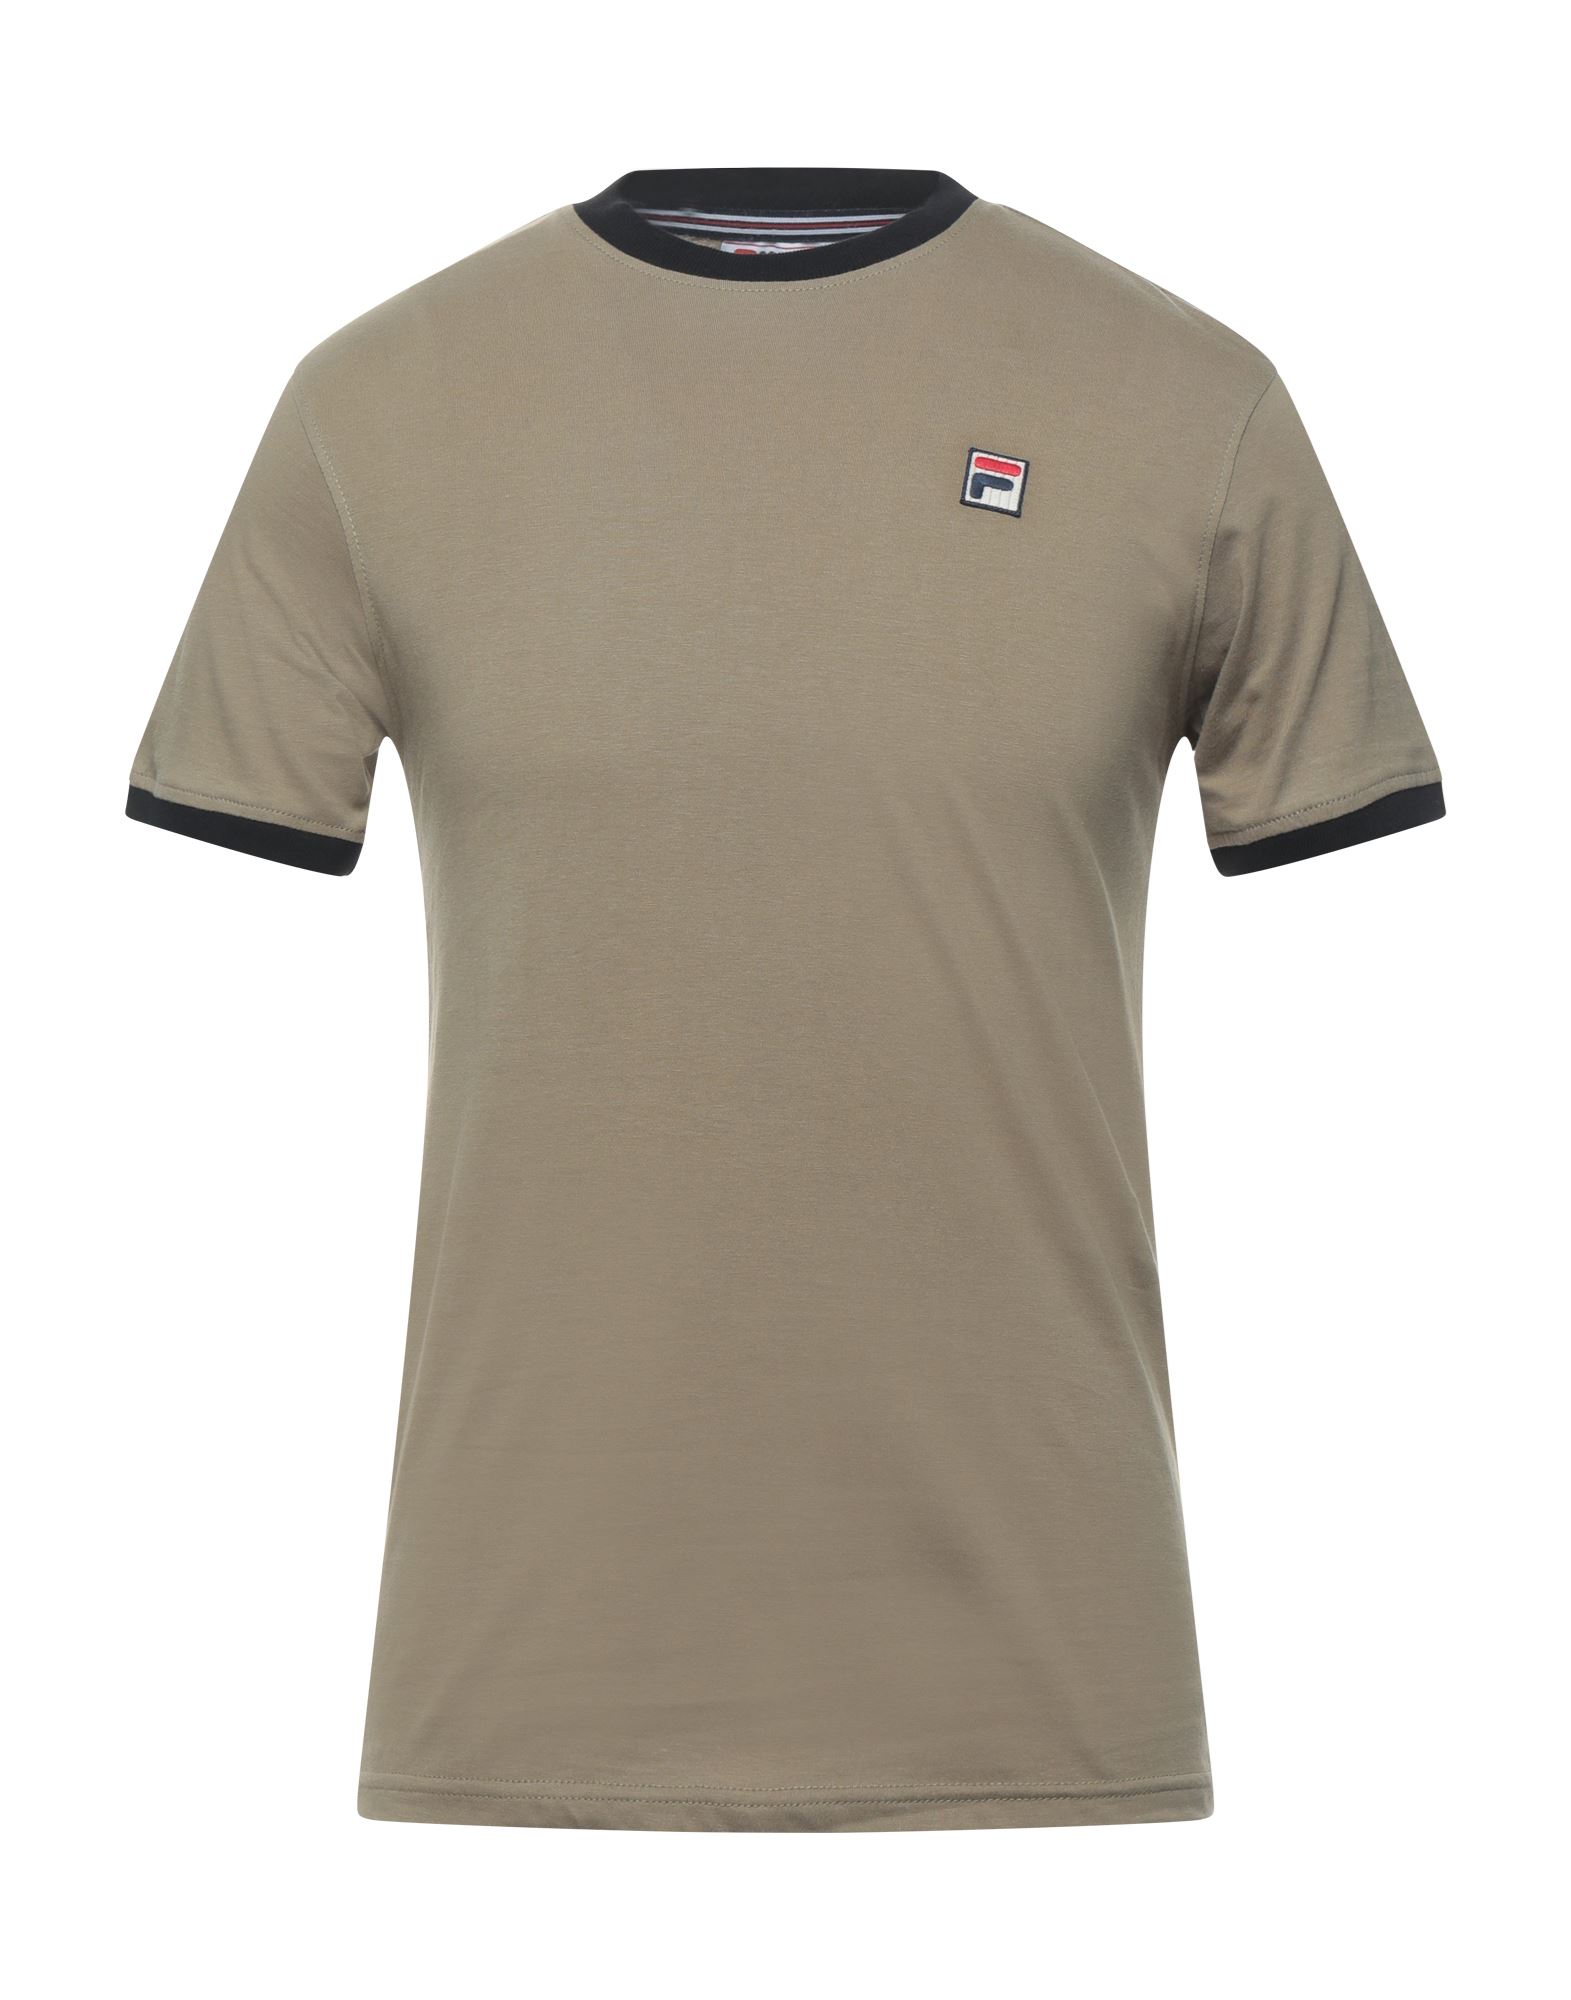 FILA T-shirts Herren Militärgrün von FILA